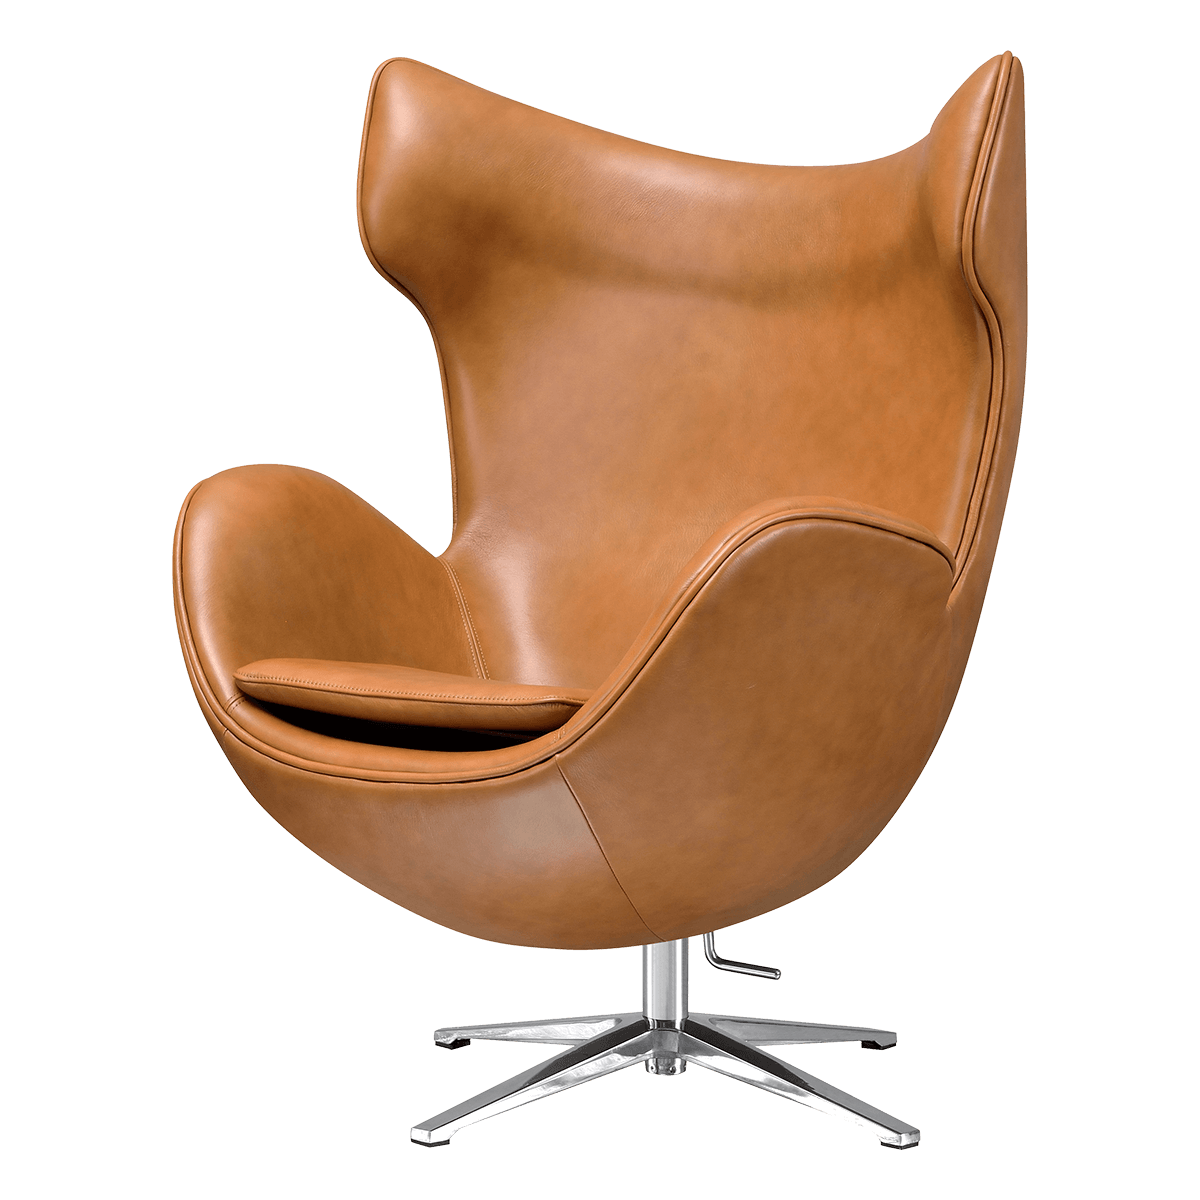 exegese Ongemak Schat Egg Chair Cognac / Bruin Leer kopen? - Bestel bij Cavel Design!